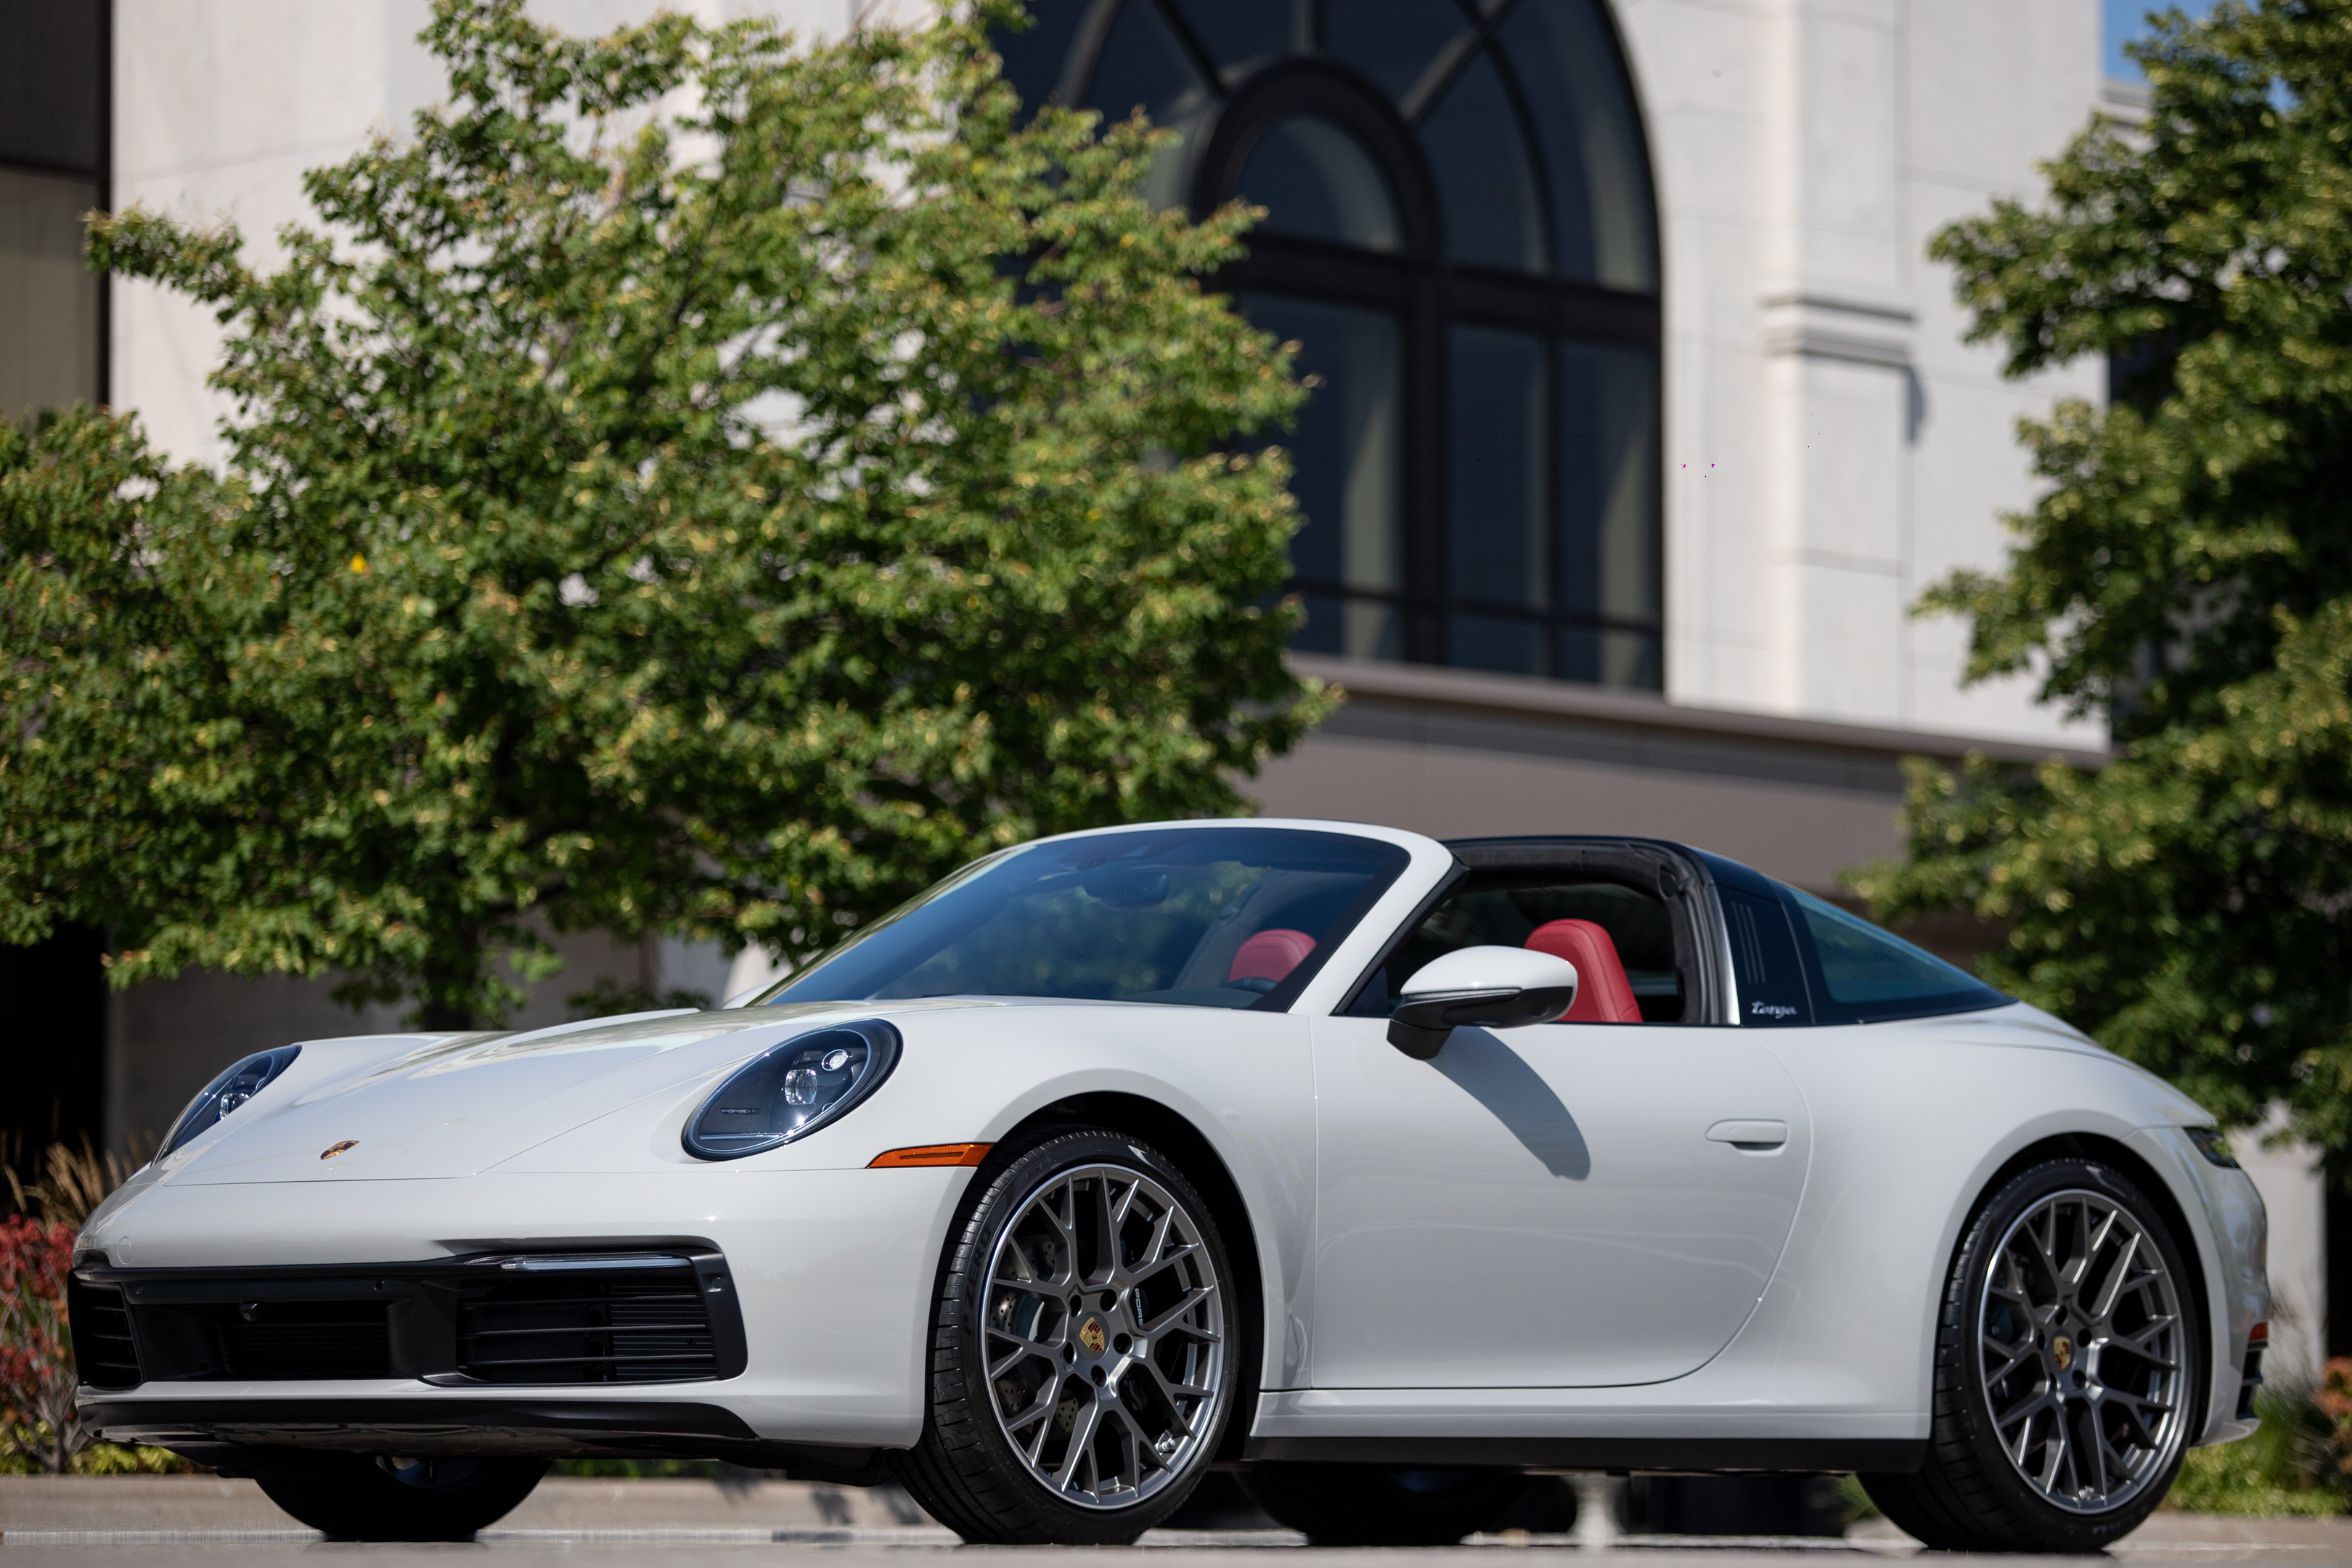 2023 Porsche 911 Targa 4 Widebody 1,507 kms  $56k in options